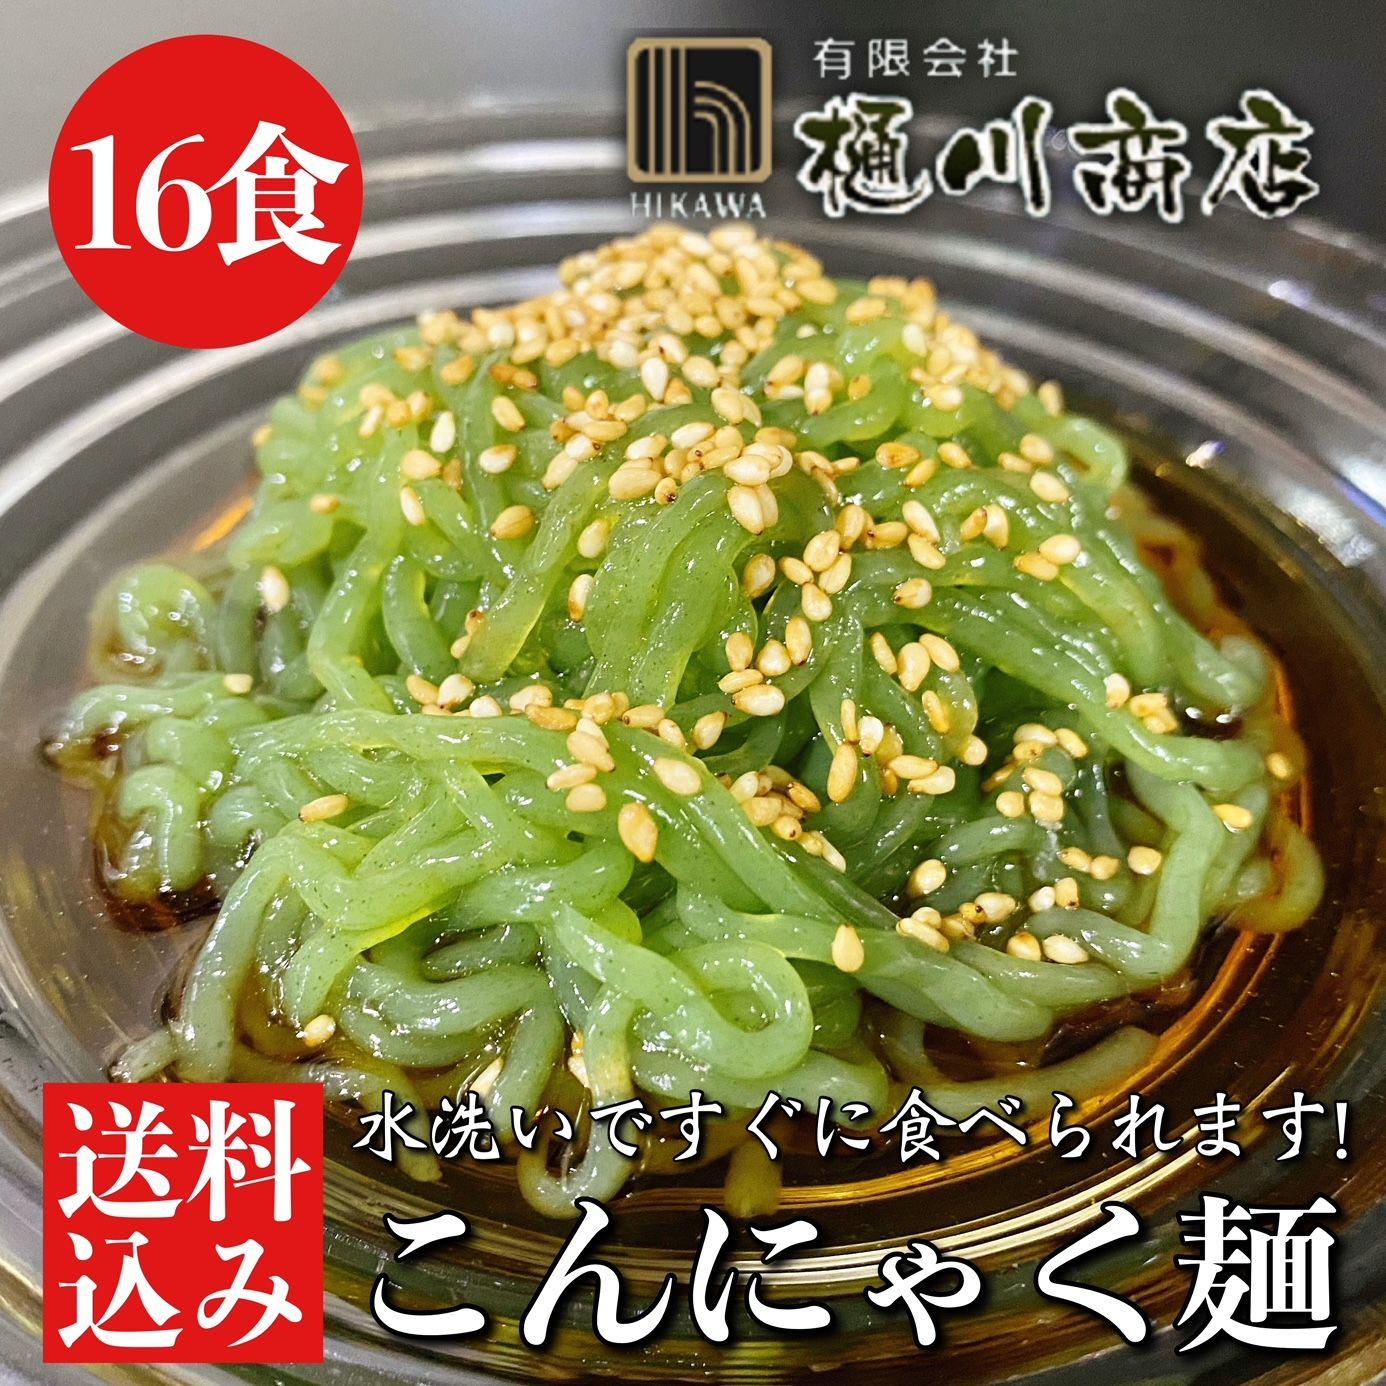 こんにゃく麺 中華スープ付き 200g×16食入 群馬県産 低糖麺-0